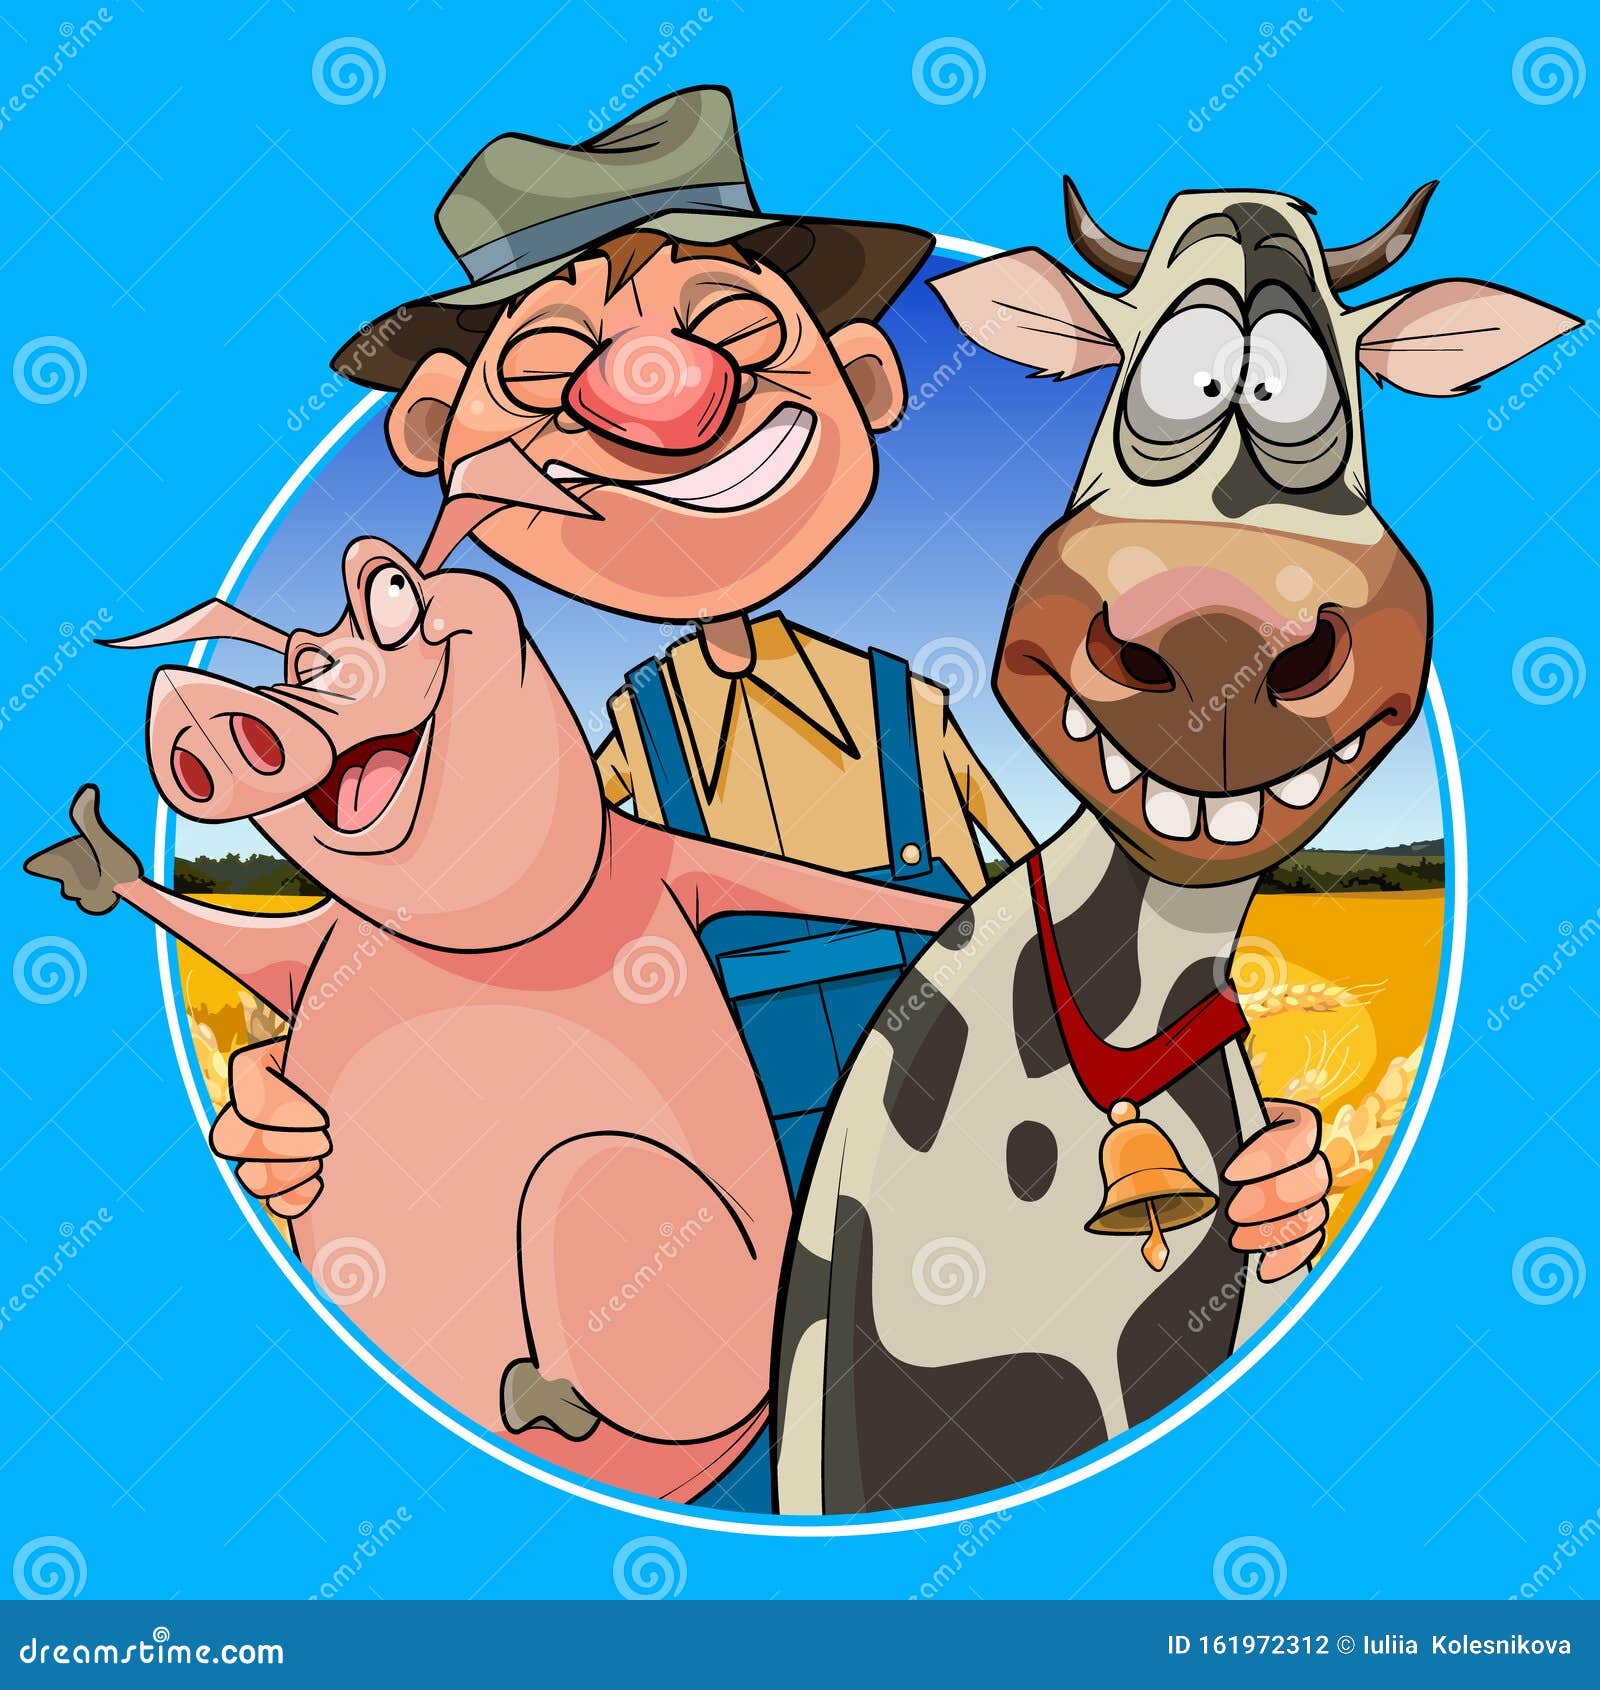 Un Fermier Joyeux En Caricature Embrassant Un Cochon Et Une Vache Illustration De Vecteur Illustration Du Caricature Cochon